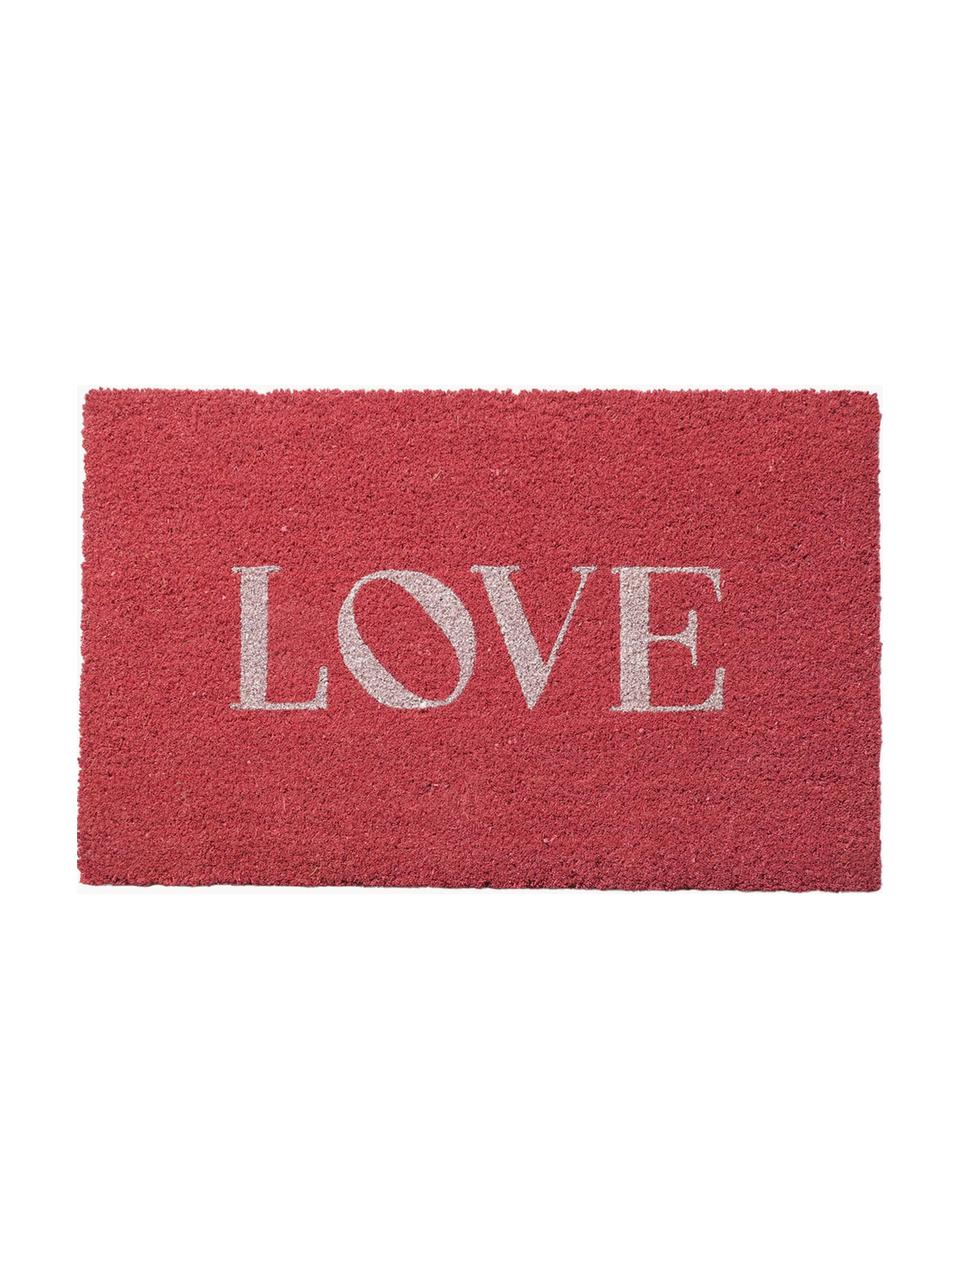 Fußmatte Love, Oberseite: Kokosfaser, Unterseite: Kunststoff (PVC), Rot, Weiß, B 40 x L 60 cm